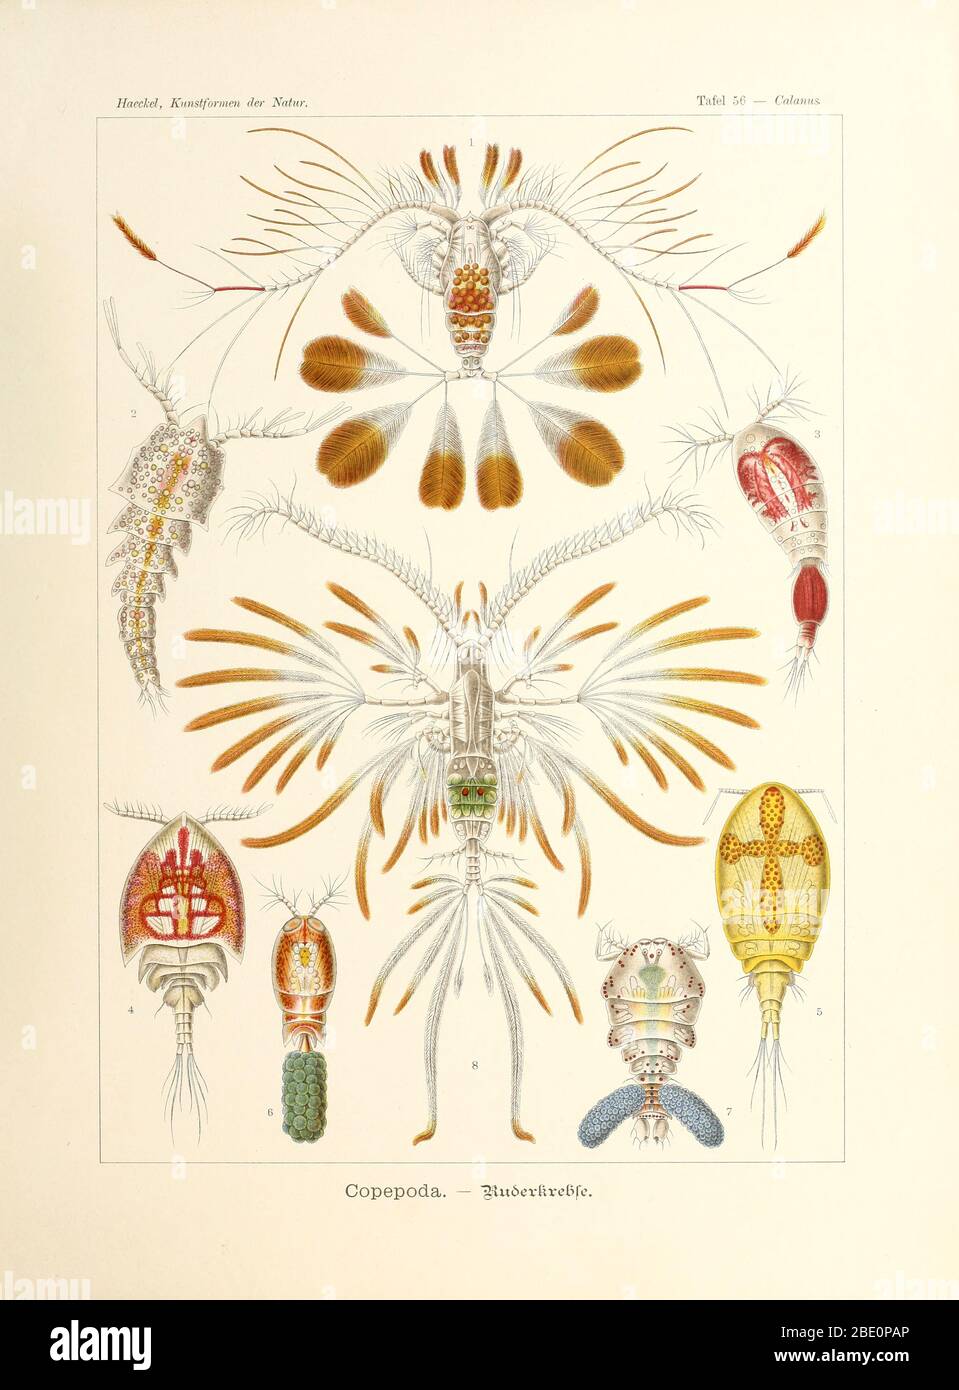 De Kunstformen der Natur d'Ernst Haeckel, 1904 Banque D'Images